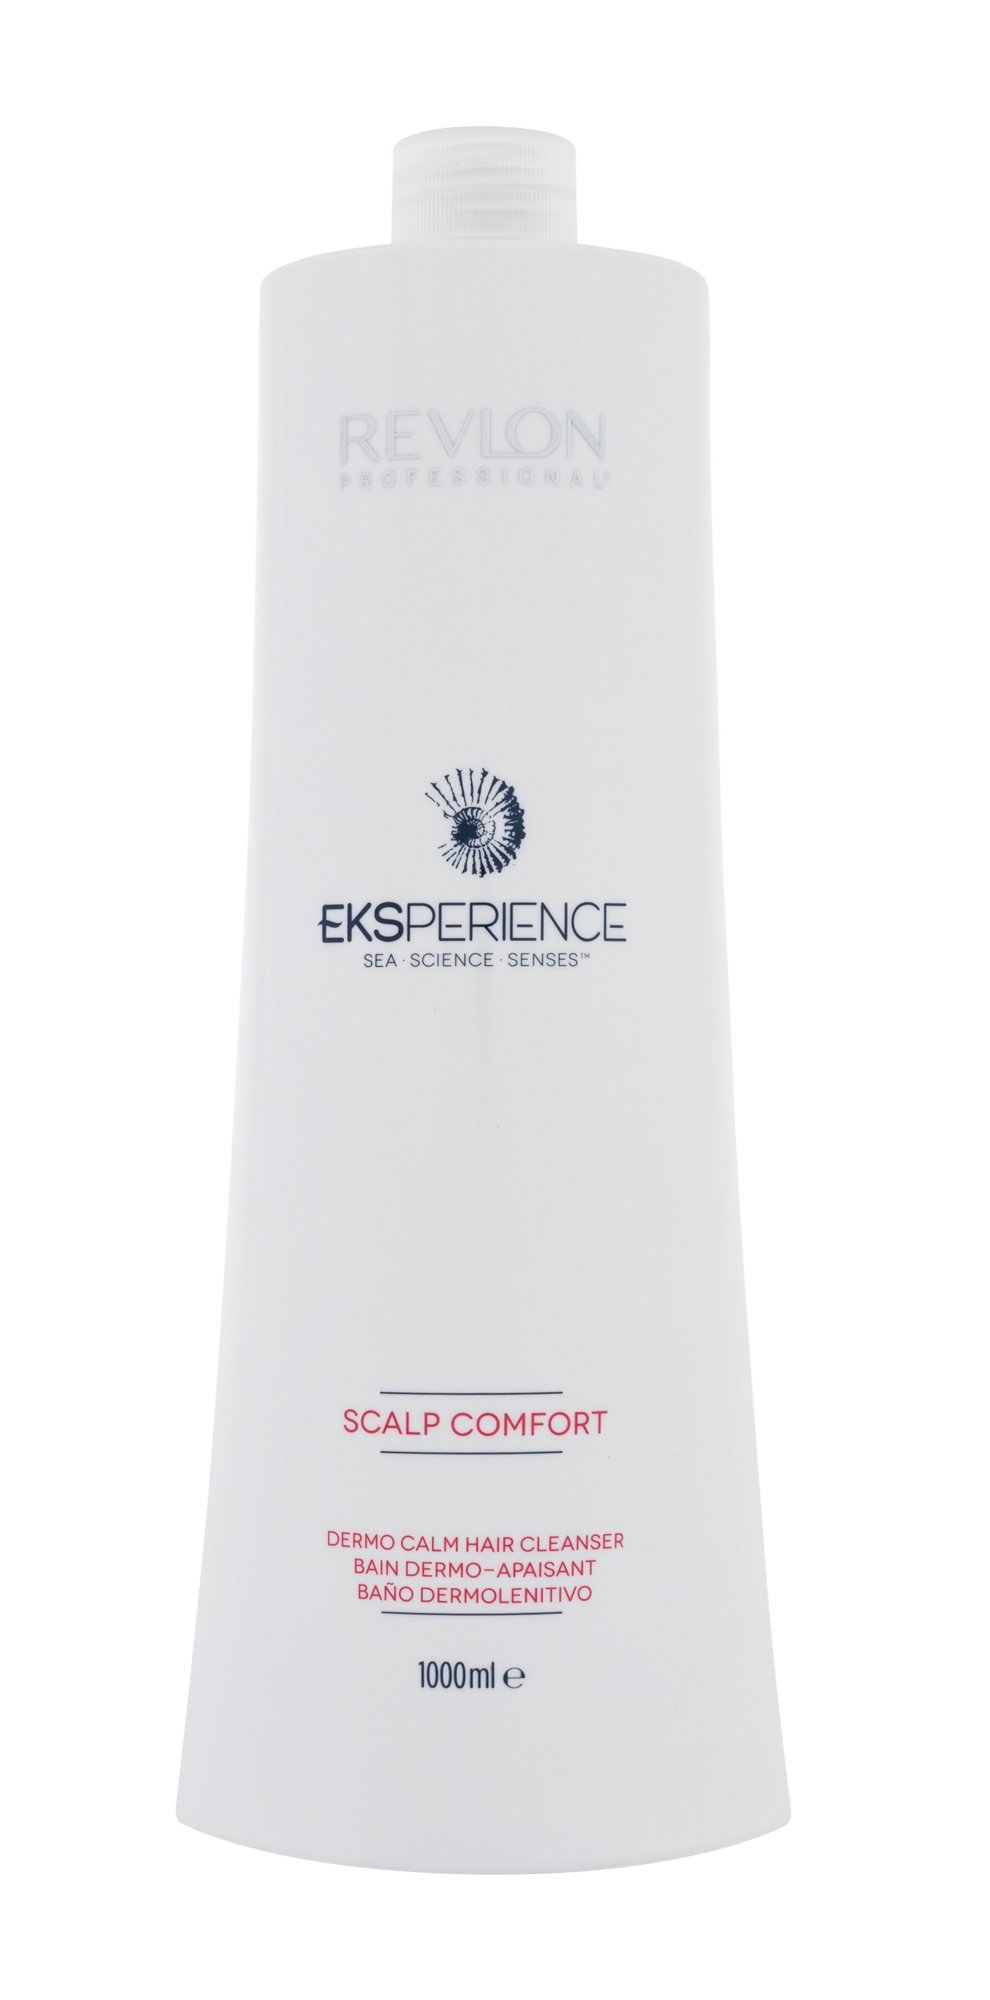 Revlon Professional Eksperience Scalp Comfort Dermo Calm Hair Cleanser šampūnas